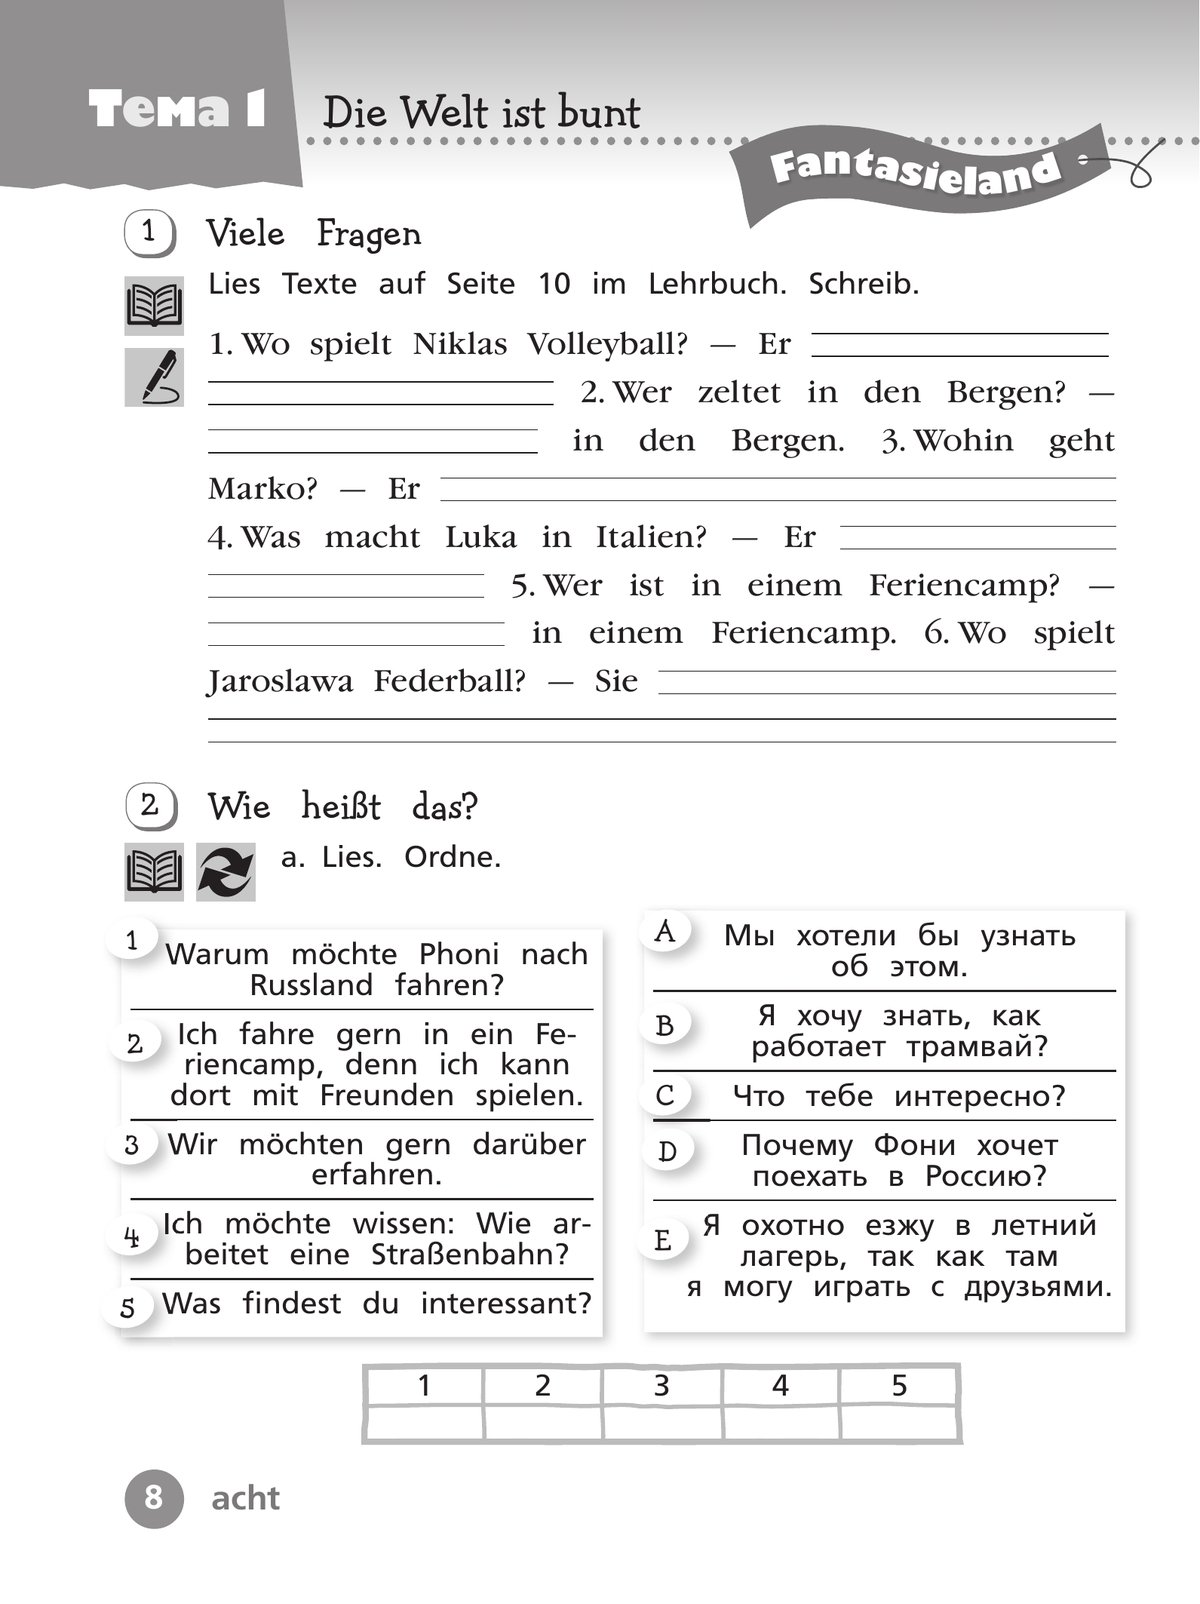 Немецкий язык. Рабочая тетрадь. 4 класс. В 2 ч. Часть 1 11